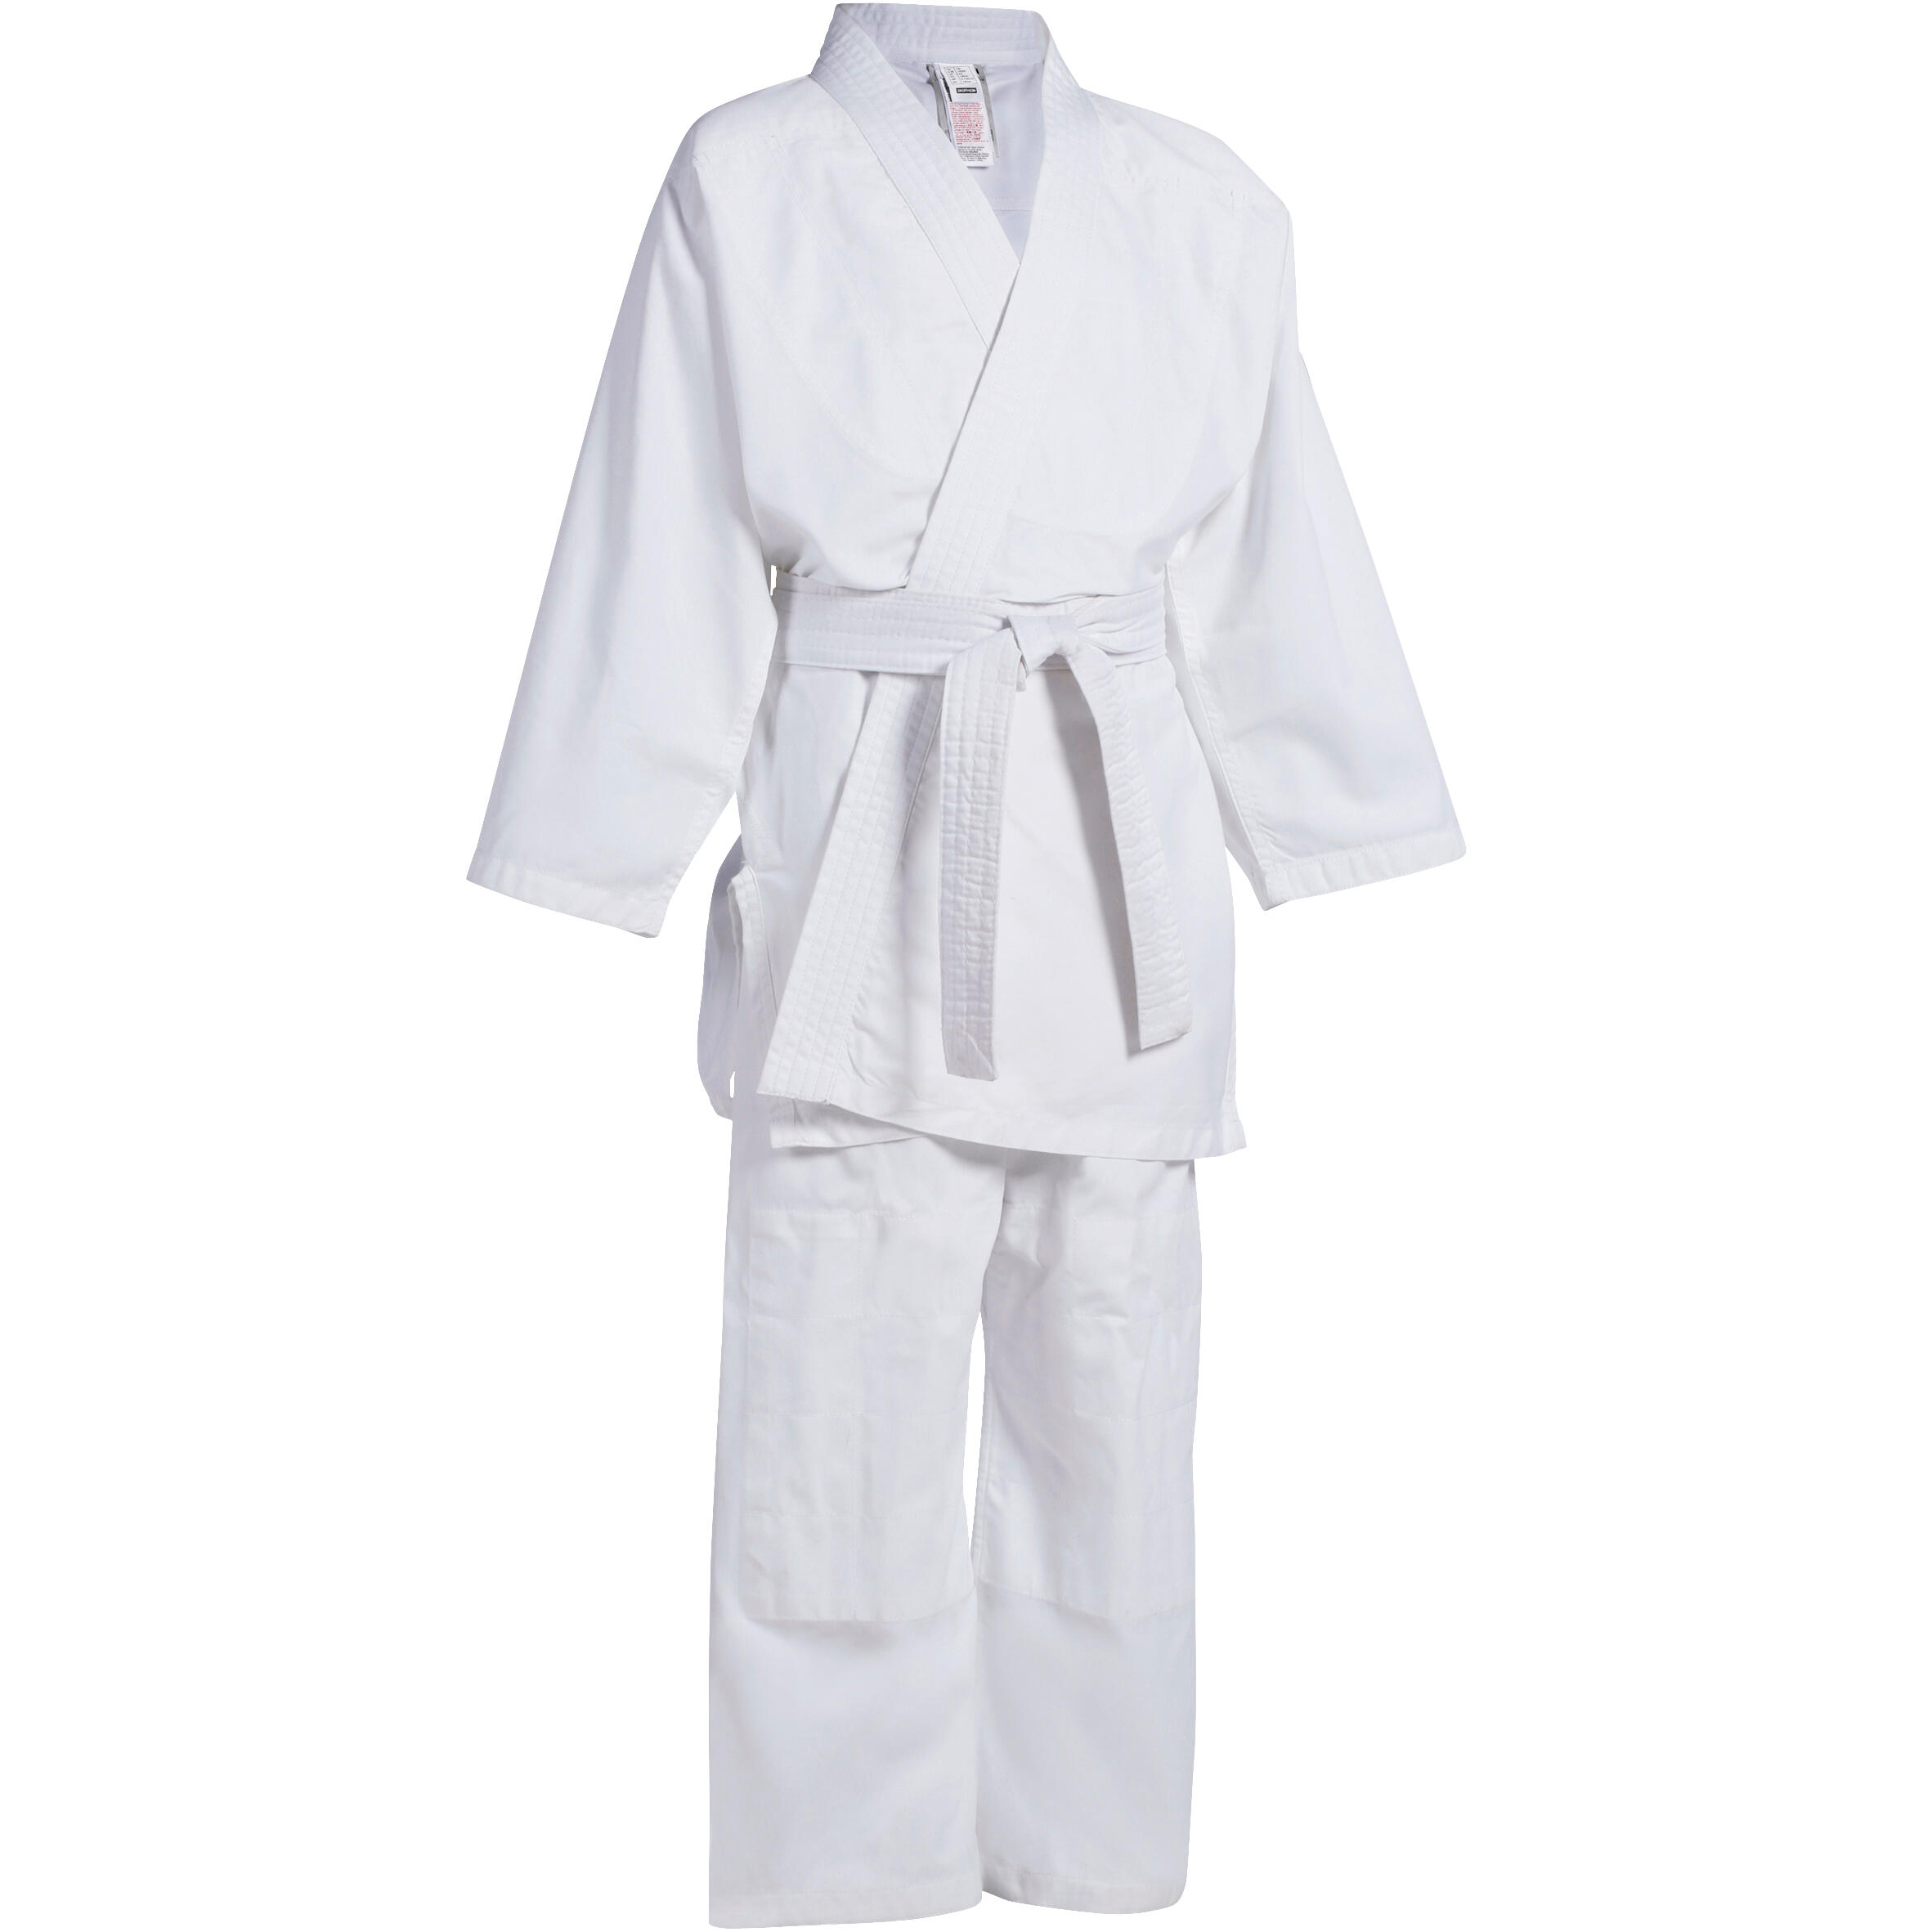 Kimono bambino judo 100 bianco. OUTSHOCK | DECATHLON